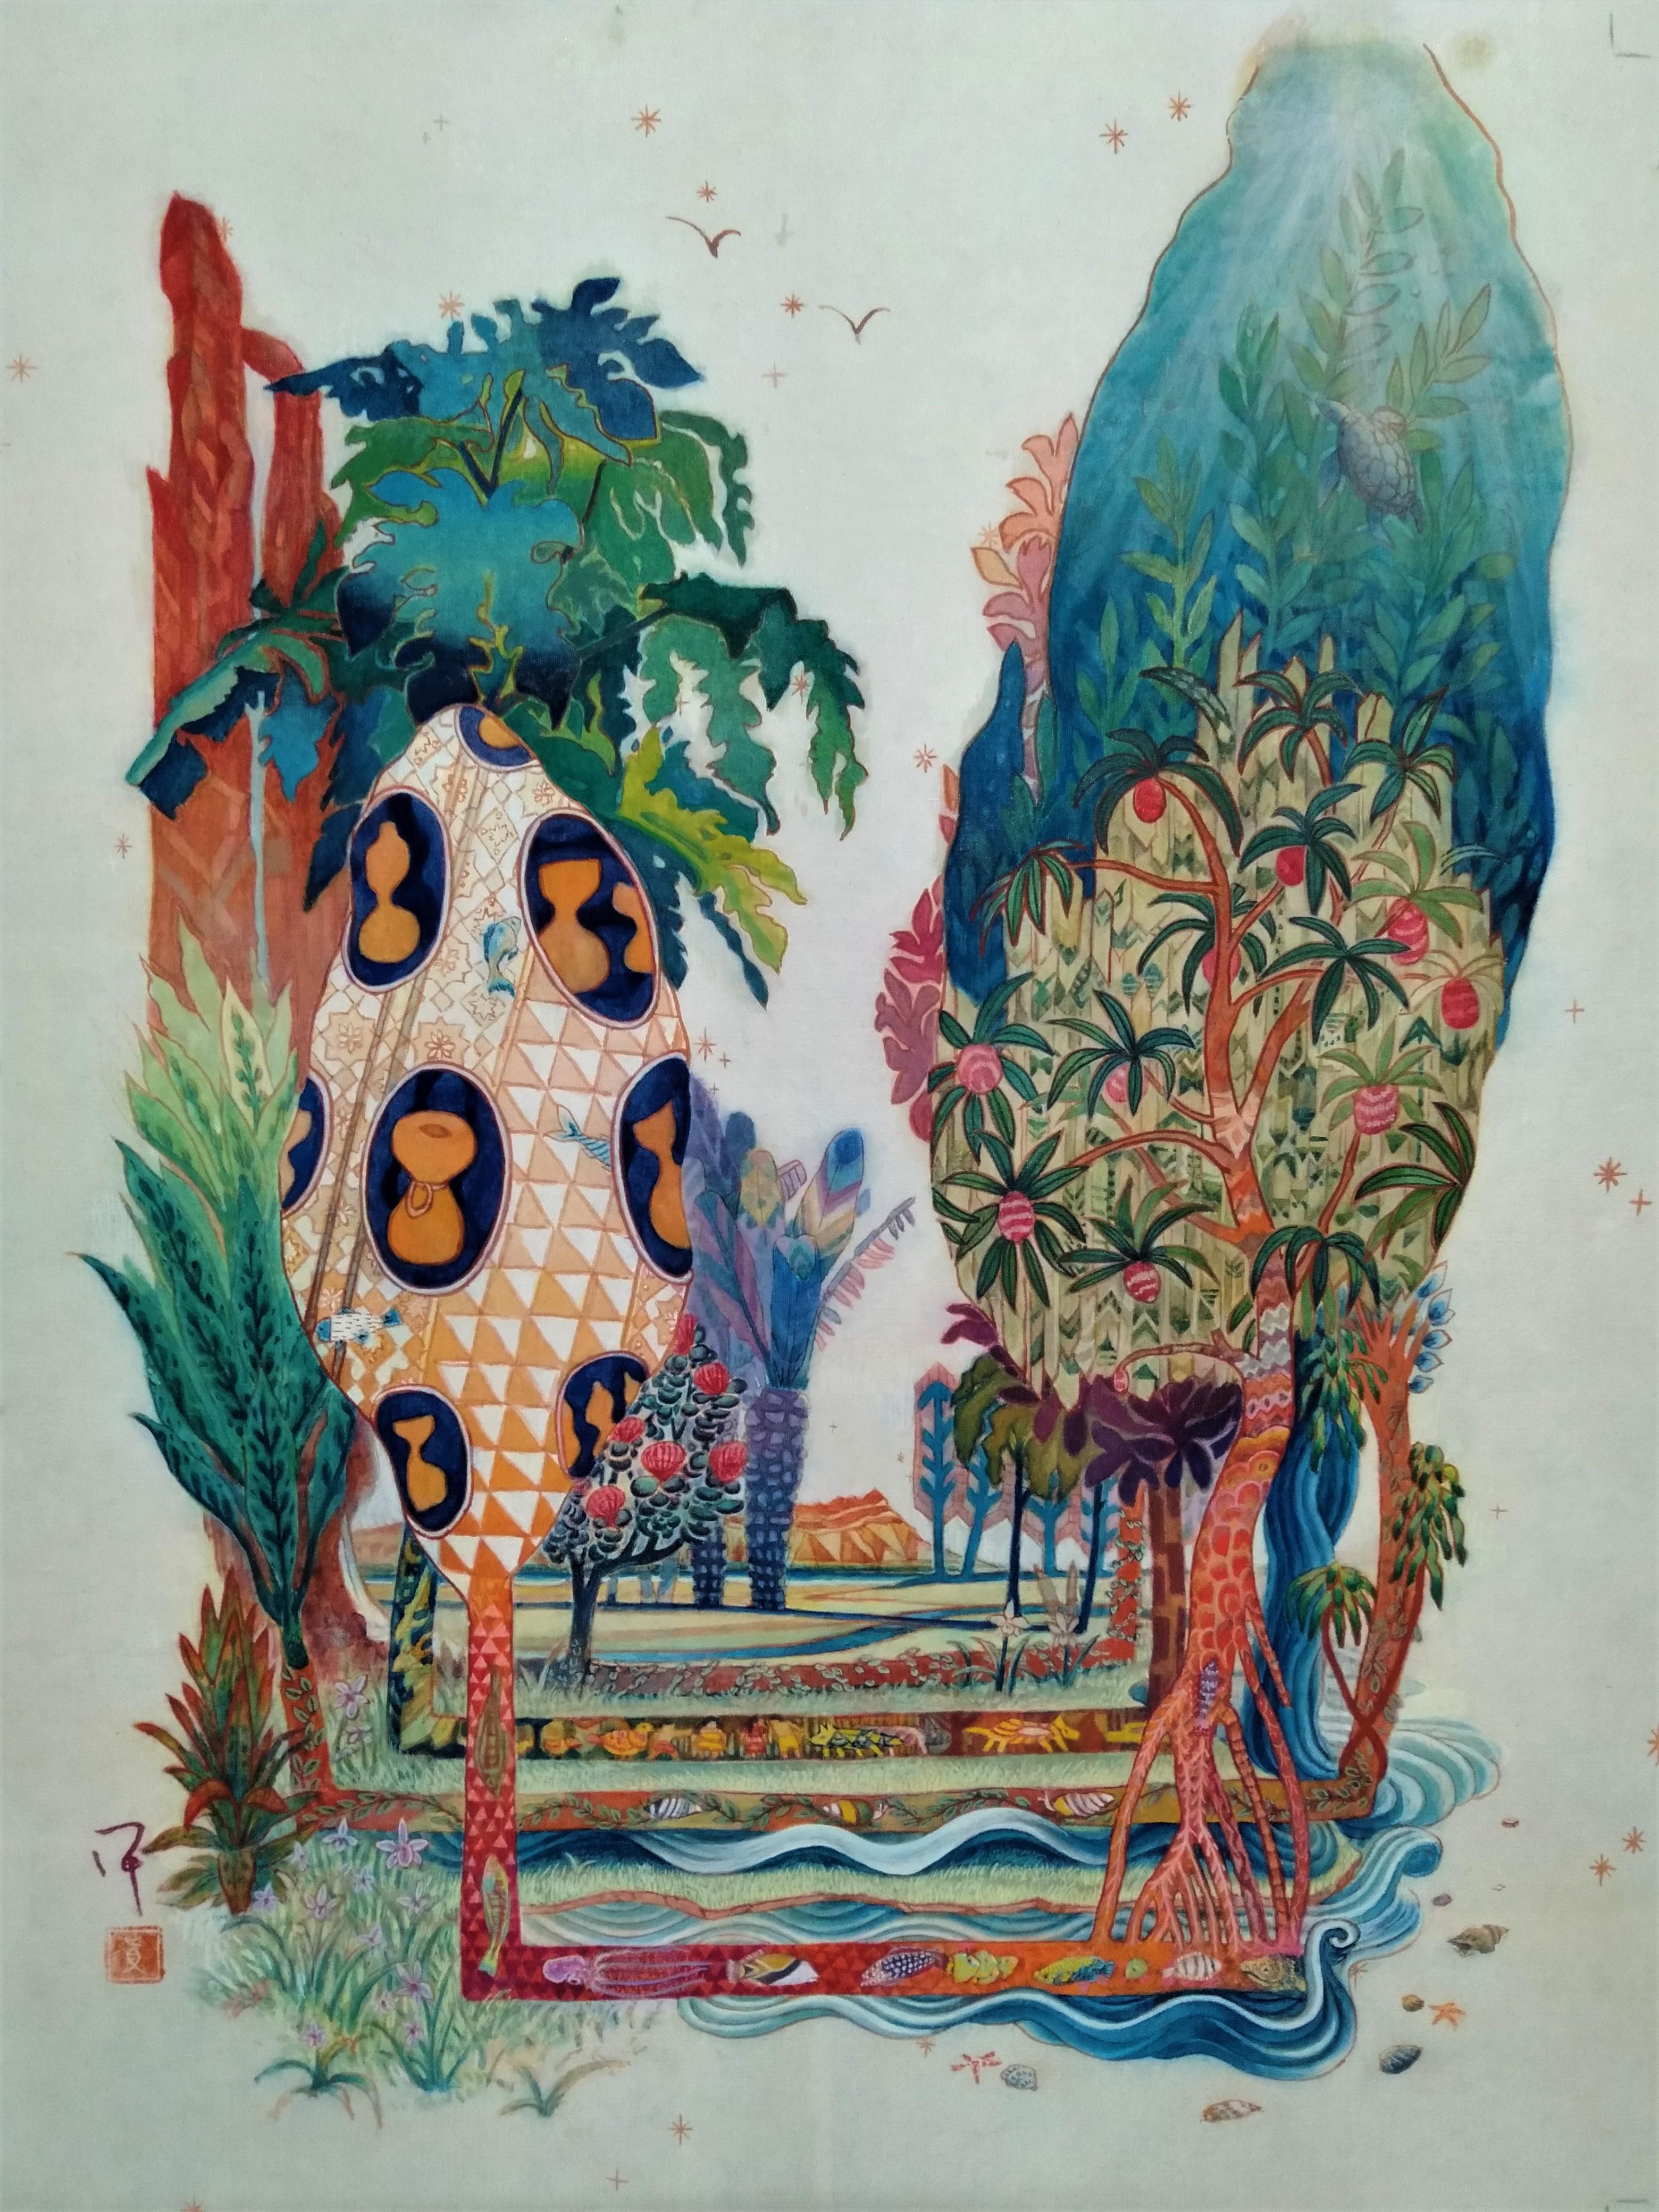 Landscape Painting Maki Kuchida - « Tree of Ipu », peinture de paysage japonaise aux pigments de la nature de la soie aux couleurs de l'Hawaï